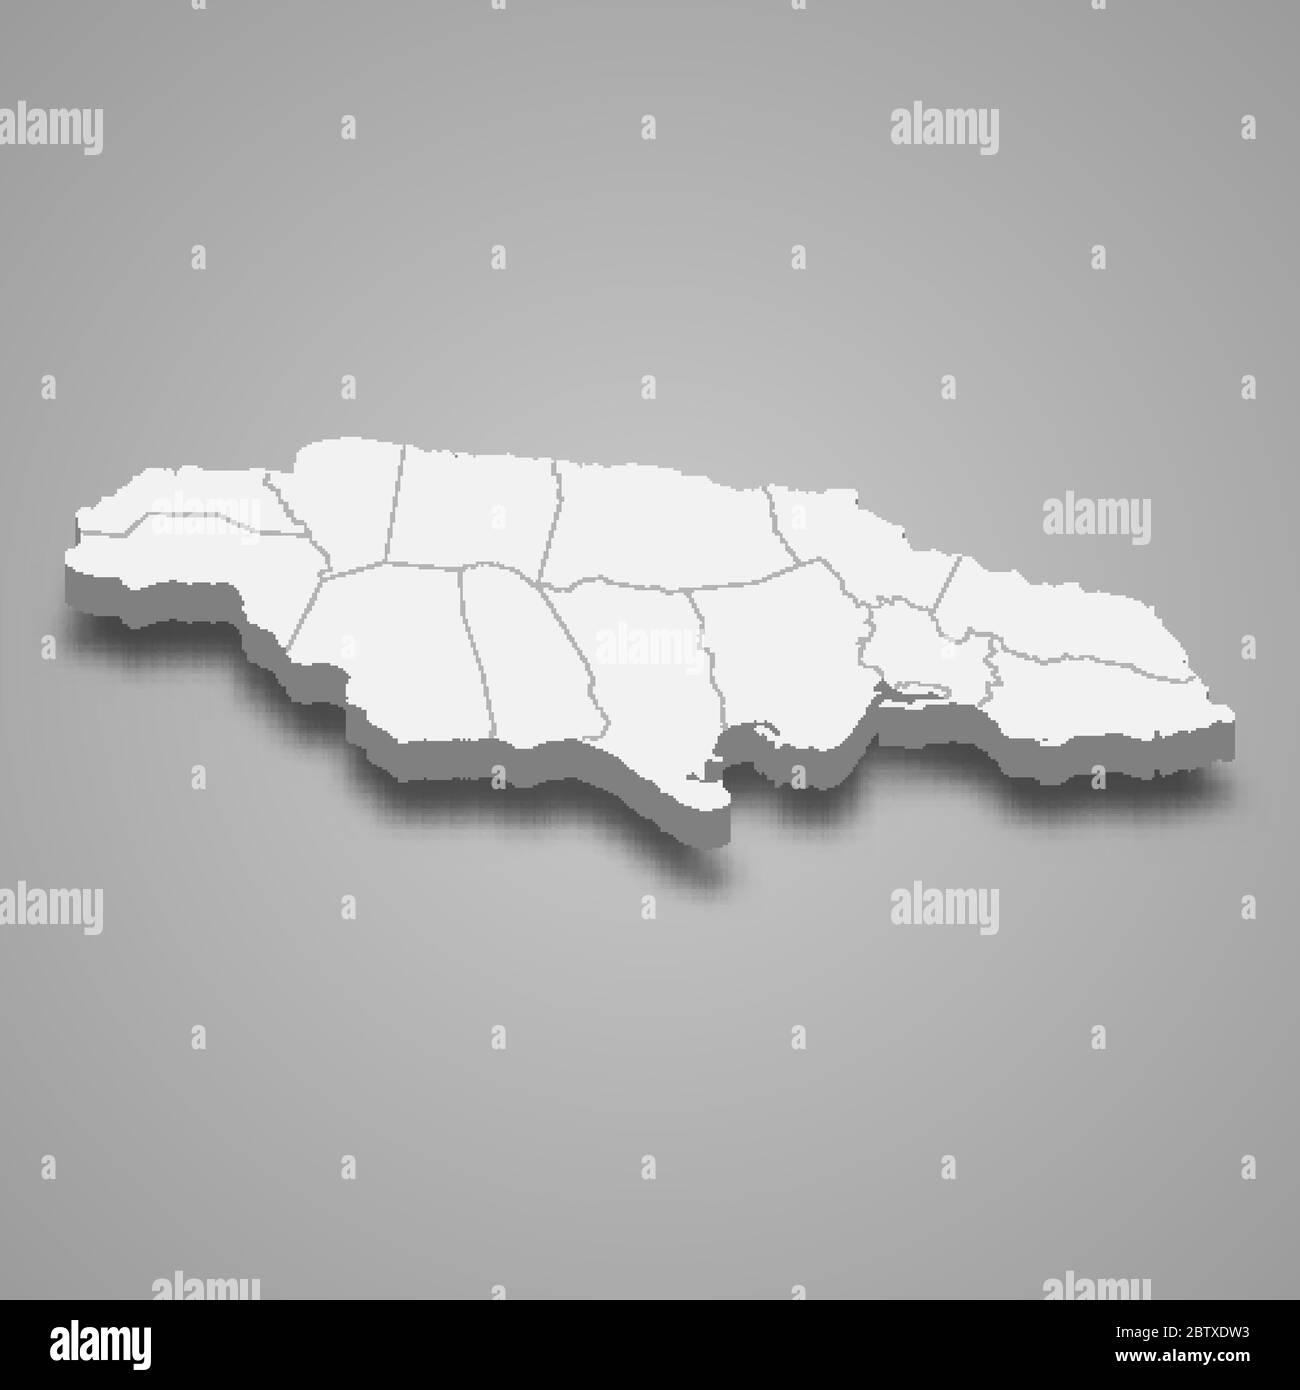 Carte 3d de la Jamaïque avec frontières des régions Illustration de Vecteur